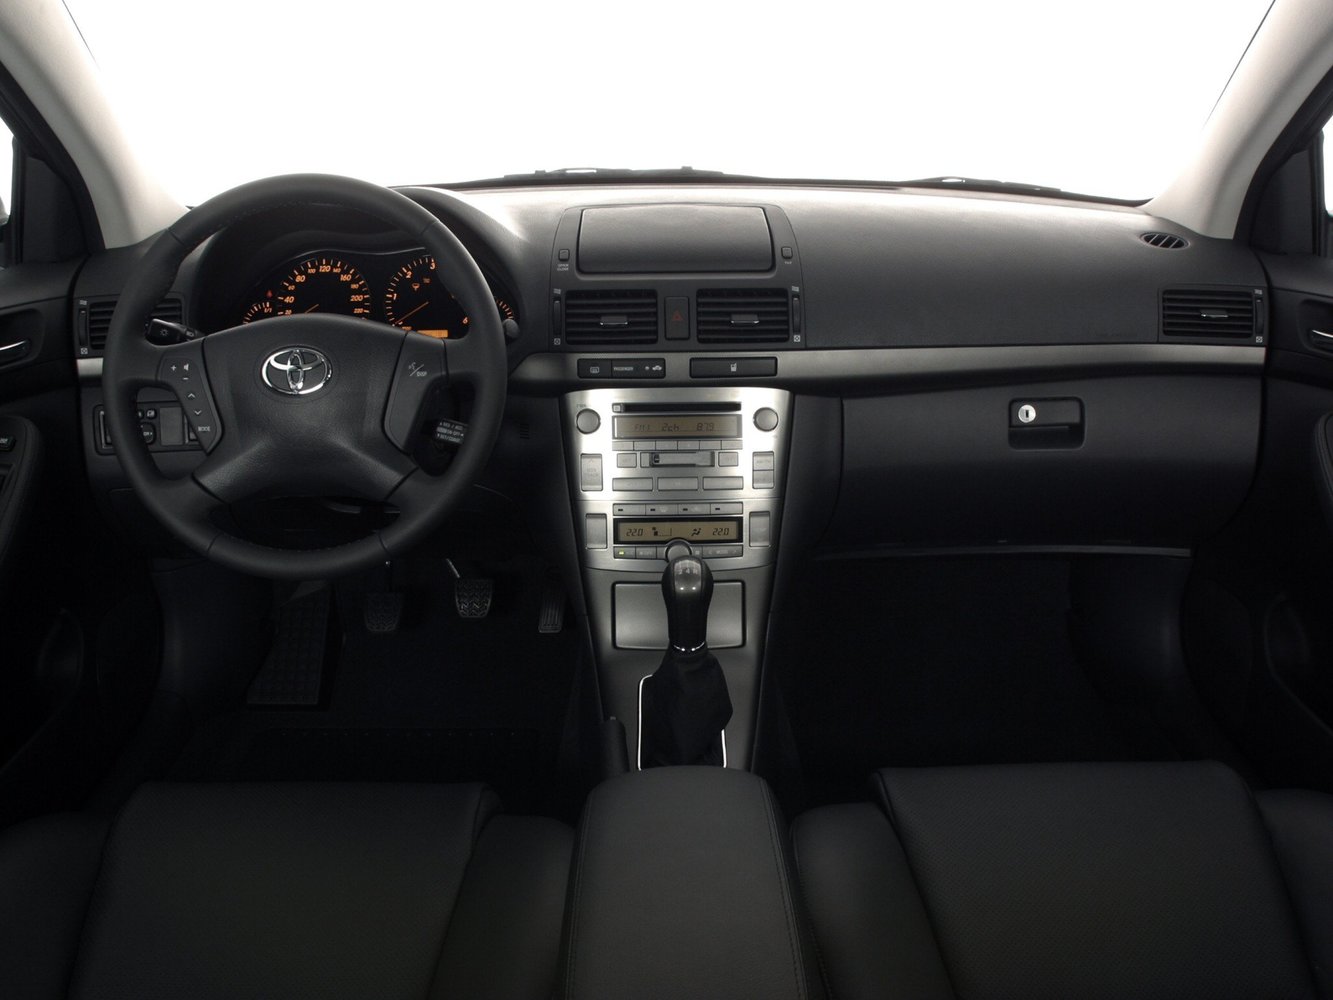 хэтчбек 5 дв. Toyota Avensis 2003 - 2006г выпуска модификация 1.6 MT (110 л.с.)